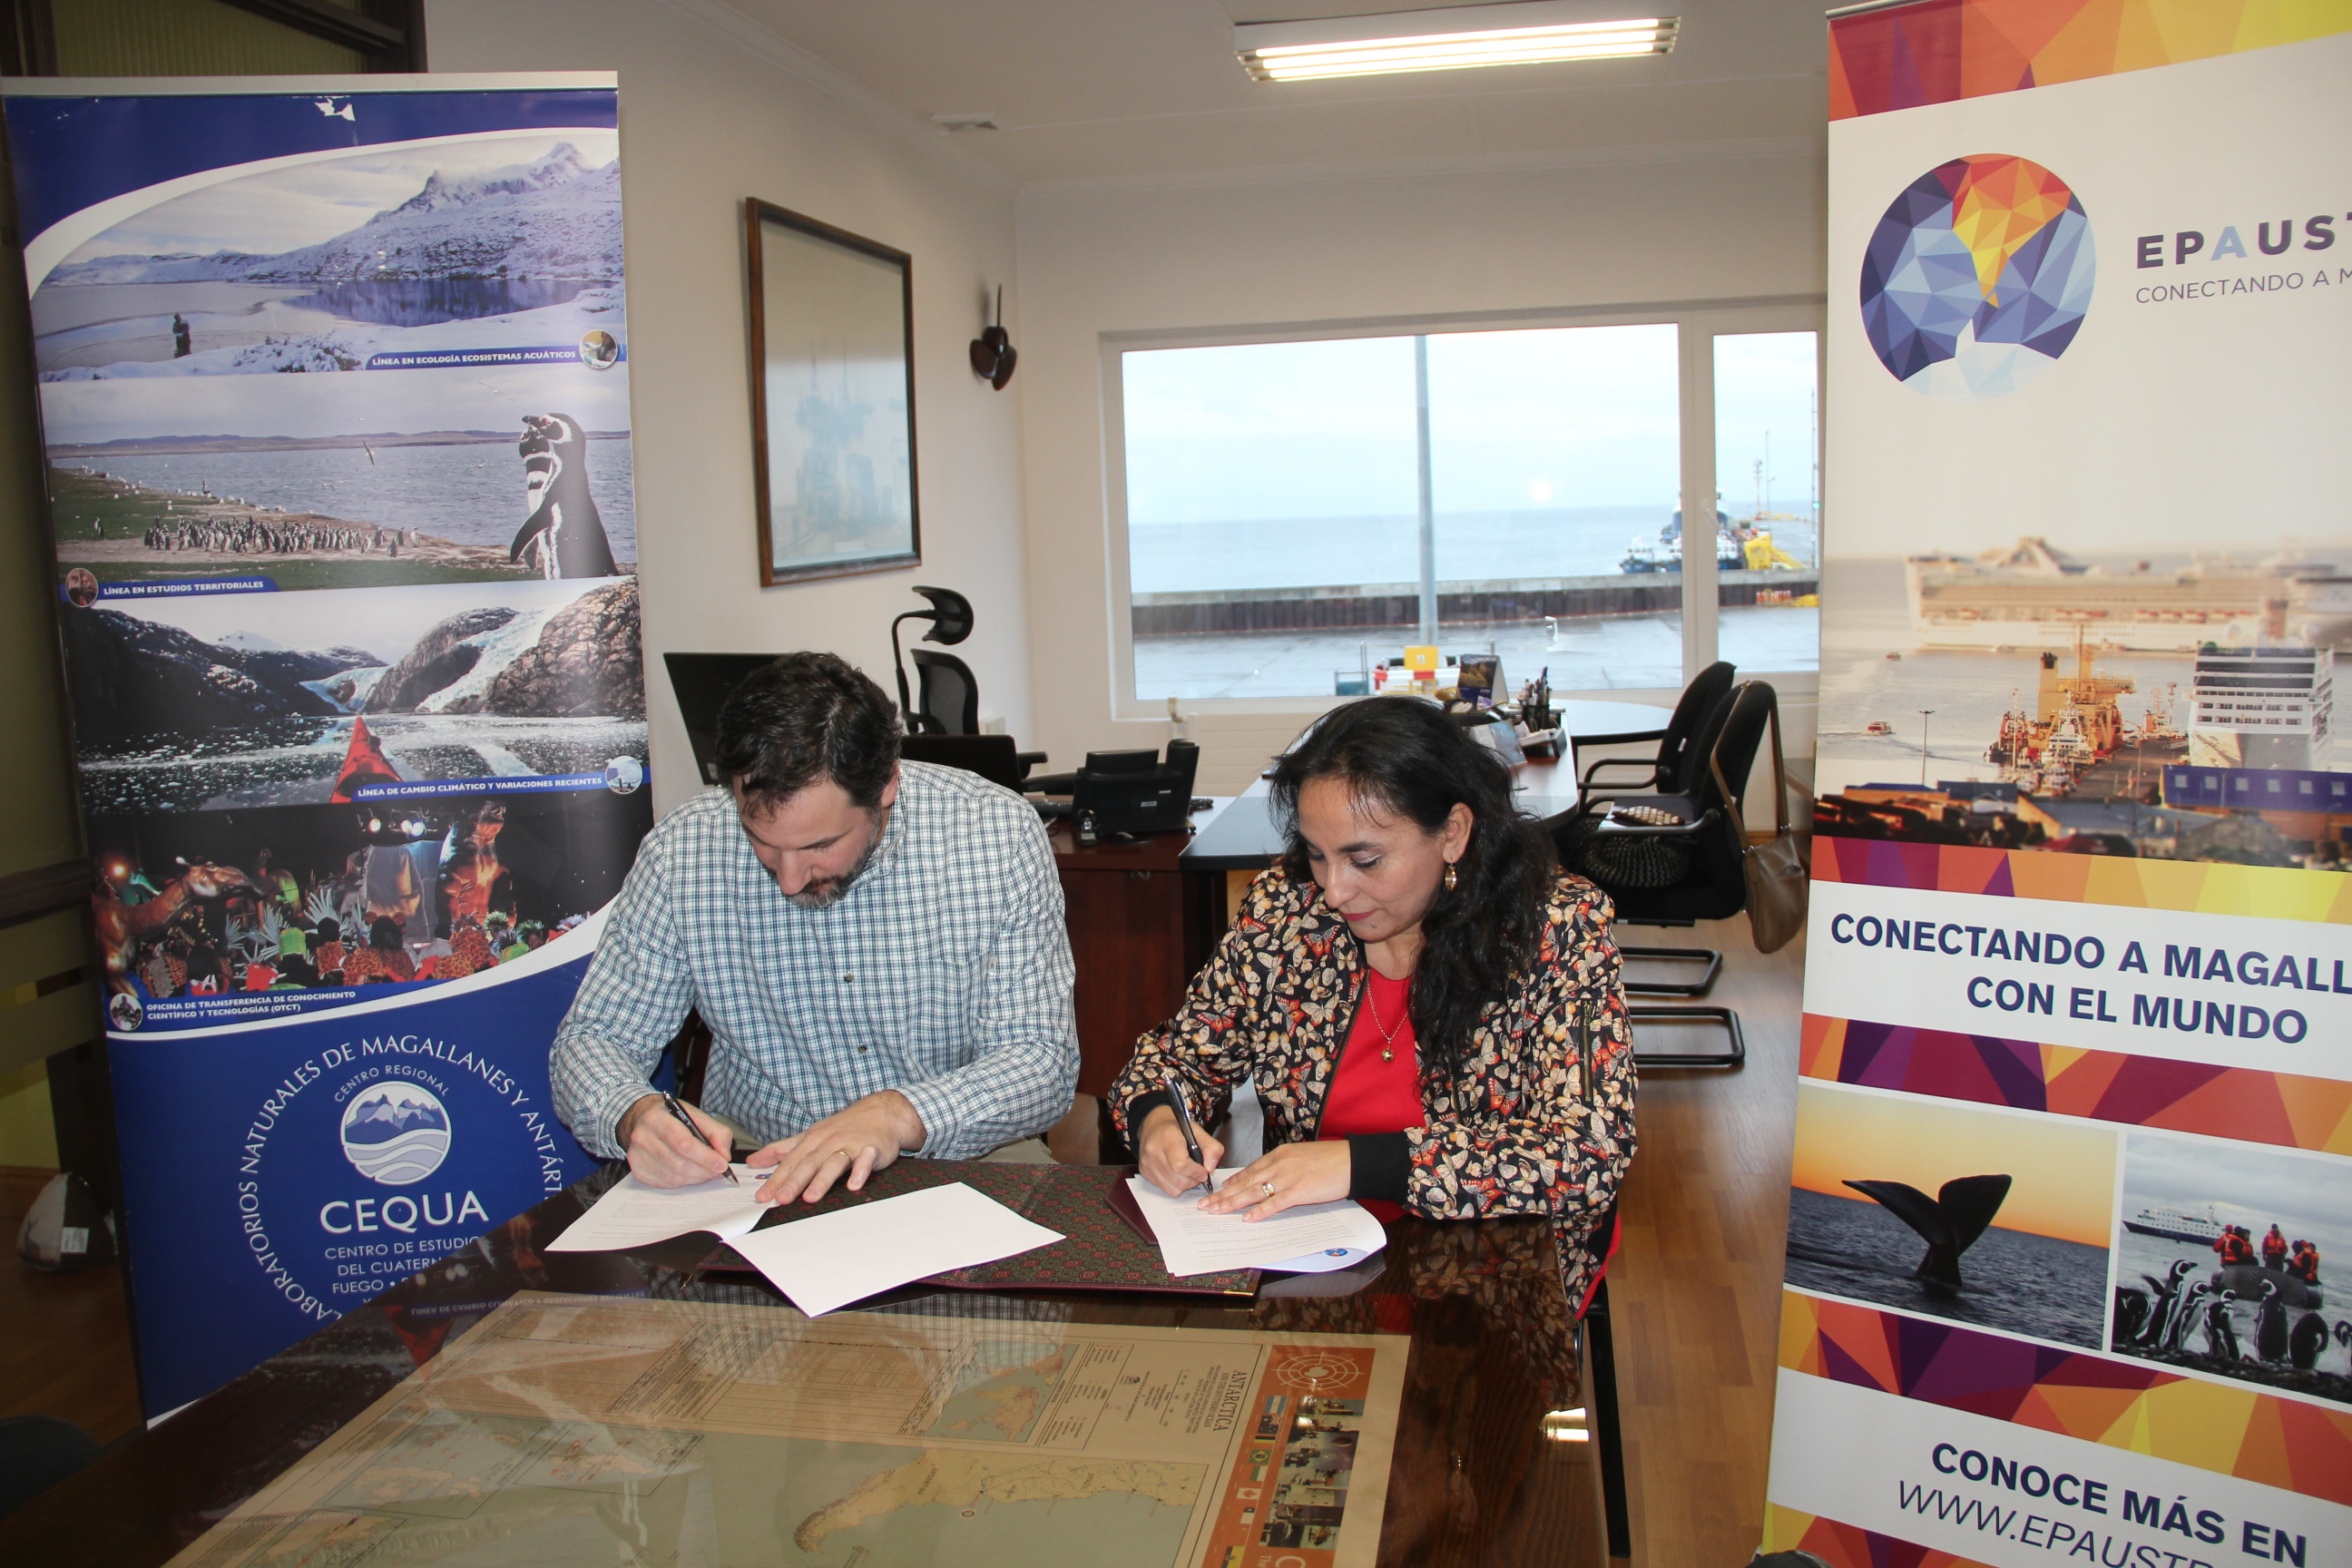 CEQUA y EPAustral firman convenio de colaboración que fomenta el cuidado del medio ambiente y el desarrollo de Magallanes